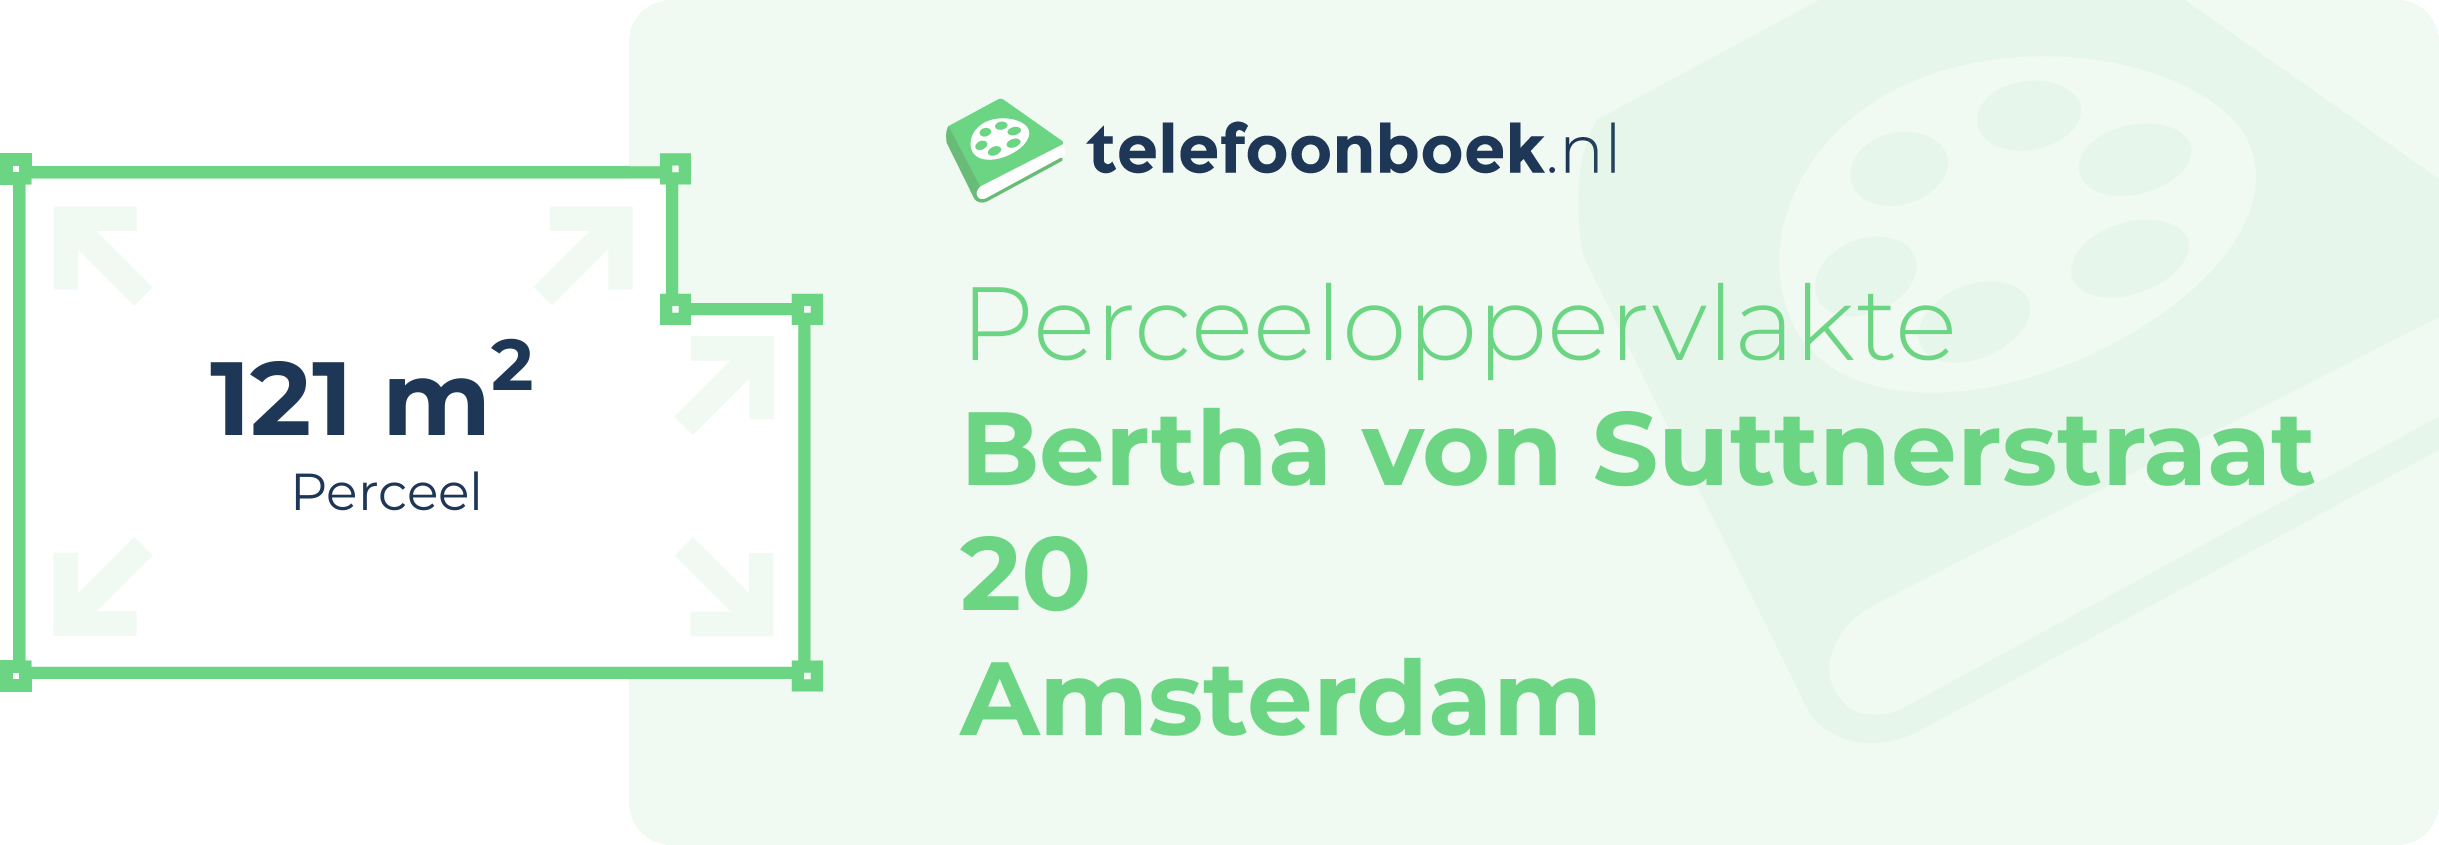 Perceeloppervlakte Bertha Von Suttnerstraat 20 Amsterdam